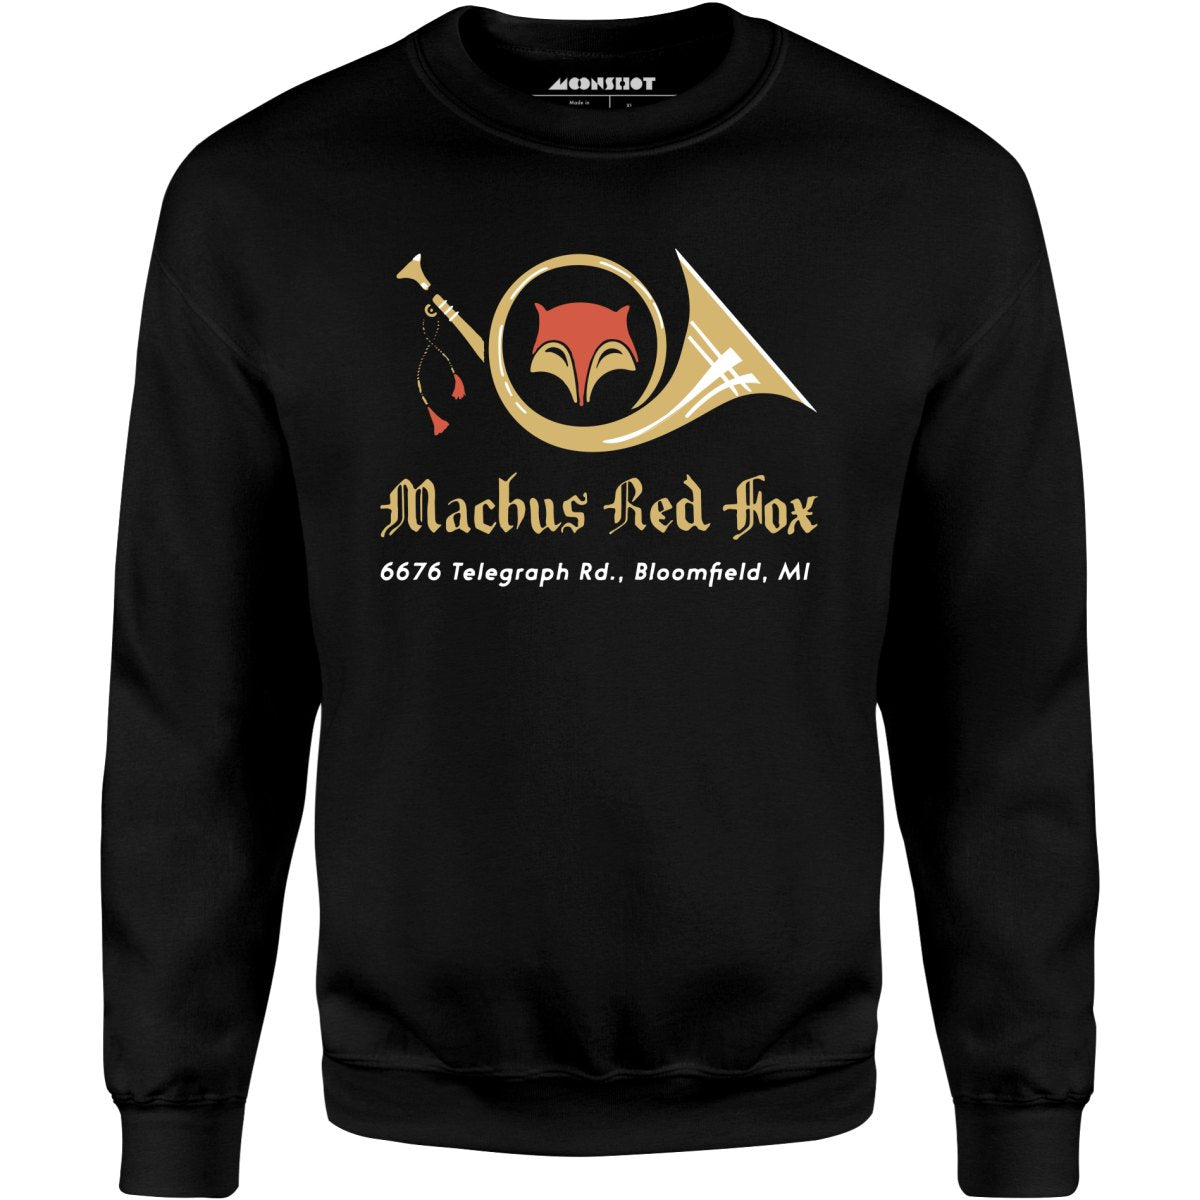 Machus Red Fox - Bloomfield, MI - Vintage Restaurant - Unisex Sweatshirt